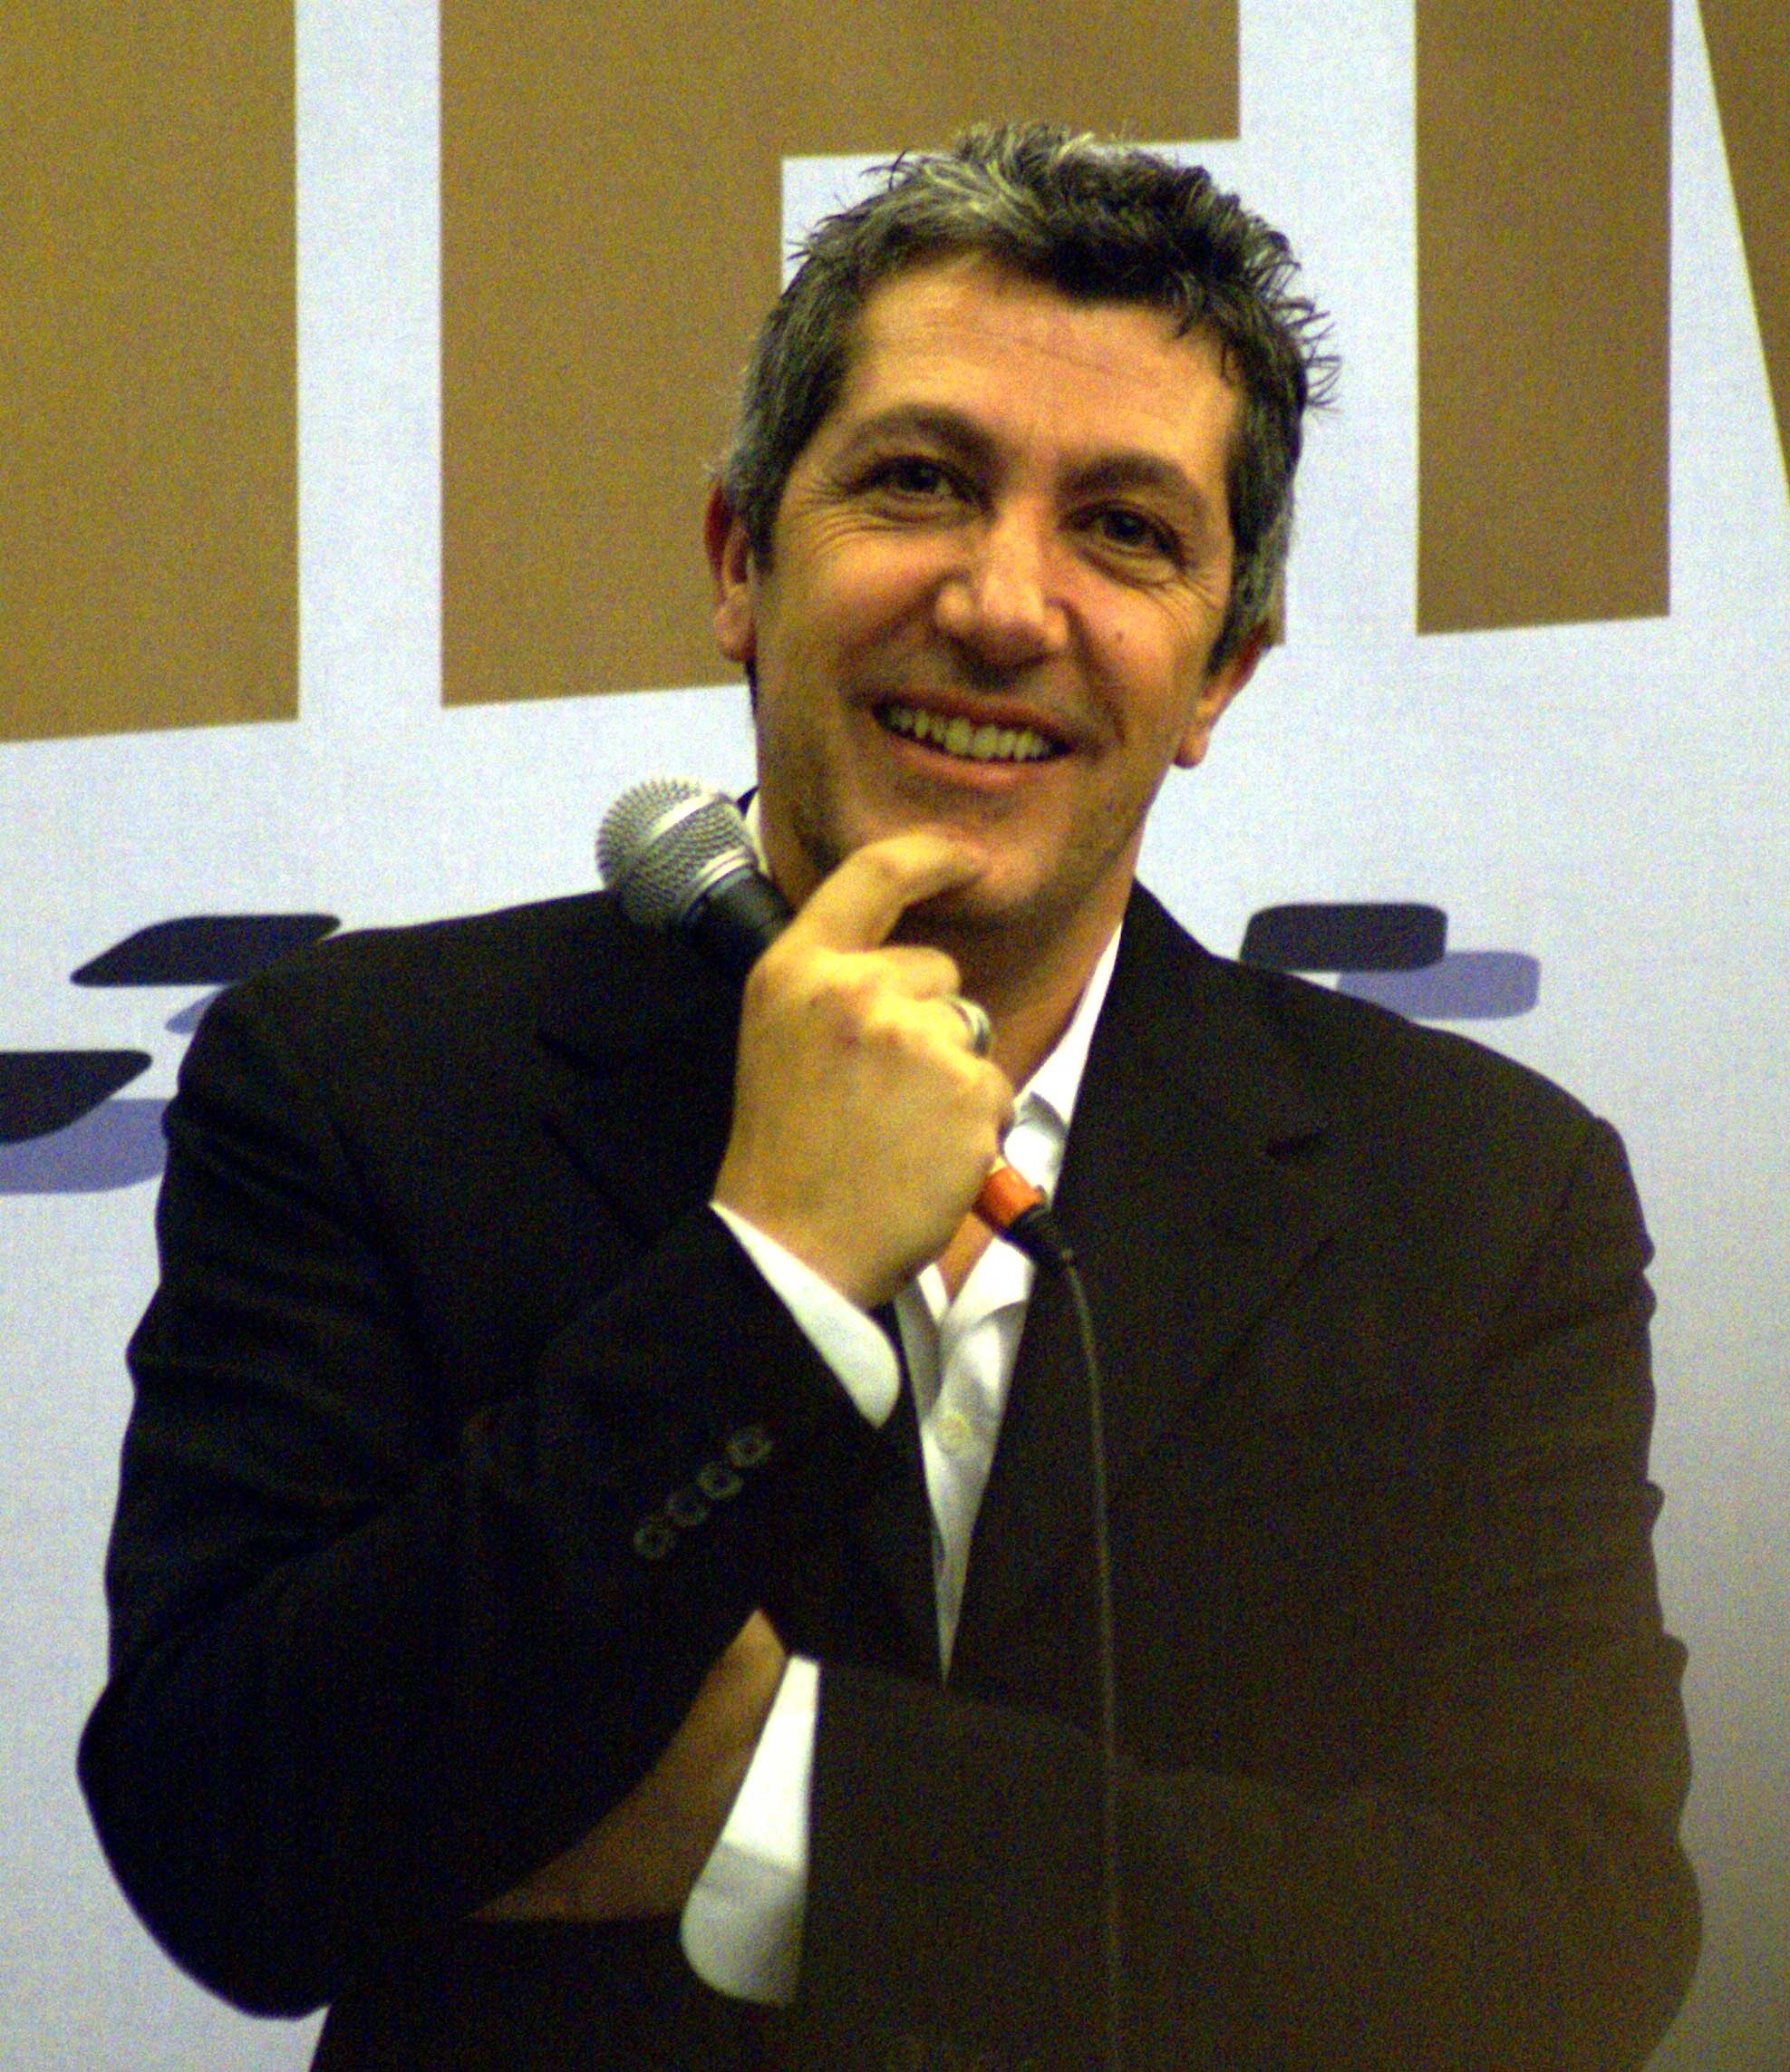 Alain CHABAT au salon du cinéma en 2006 (Photo Pascal Fernandez, http://blofeld60.deviantart.com/)